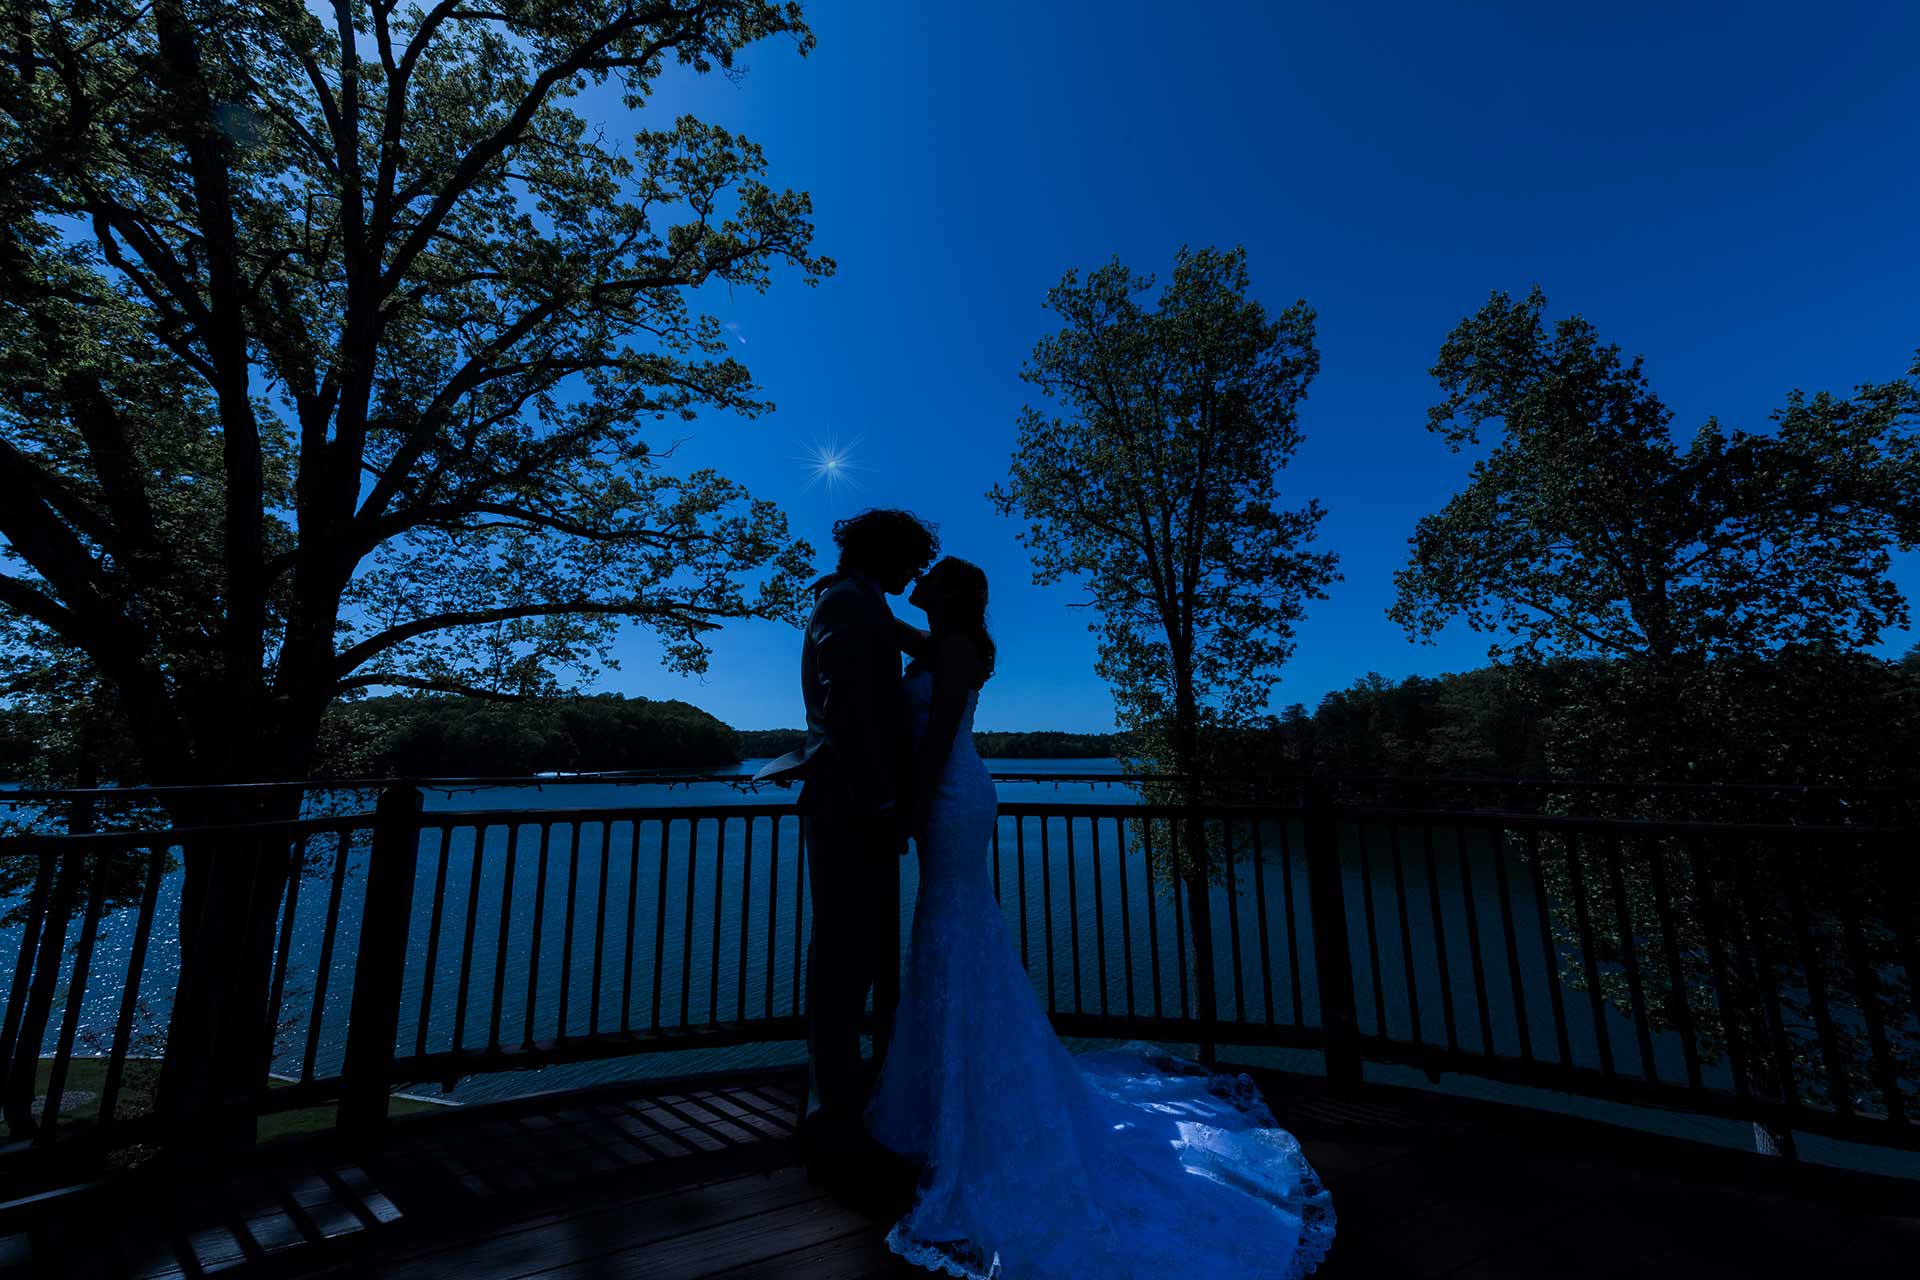 Wedding couple at dusk backdrop